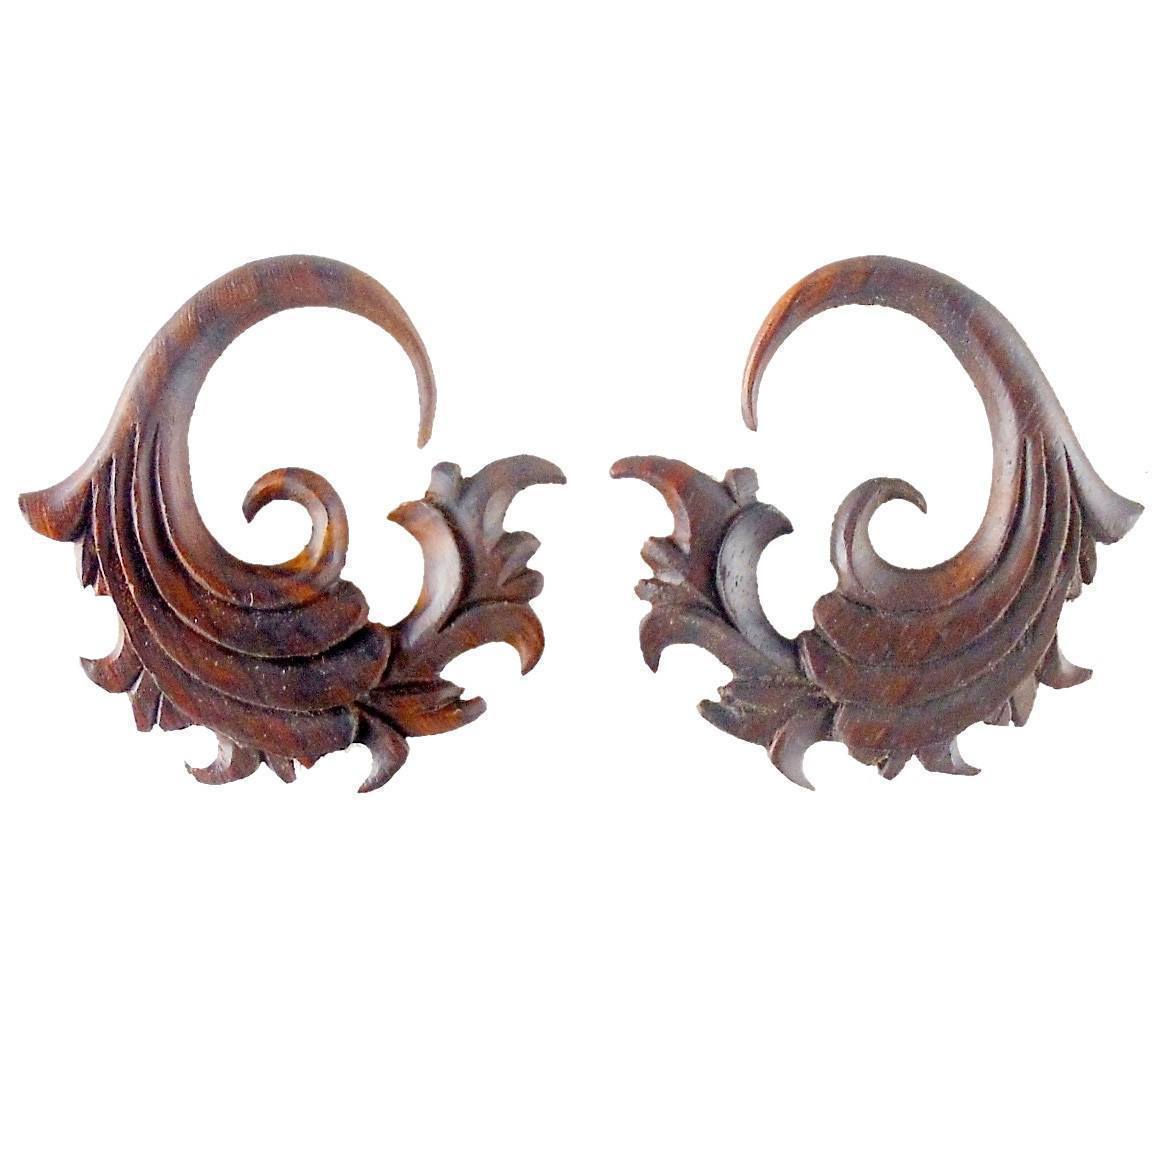 Gauges :|: Fire. 4 gauge Rosewood Earrings. 1 1/4 inch W X 1 1/2 inch L | Wood Body Jewelry